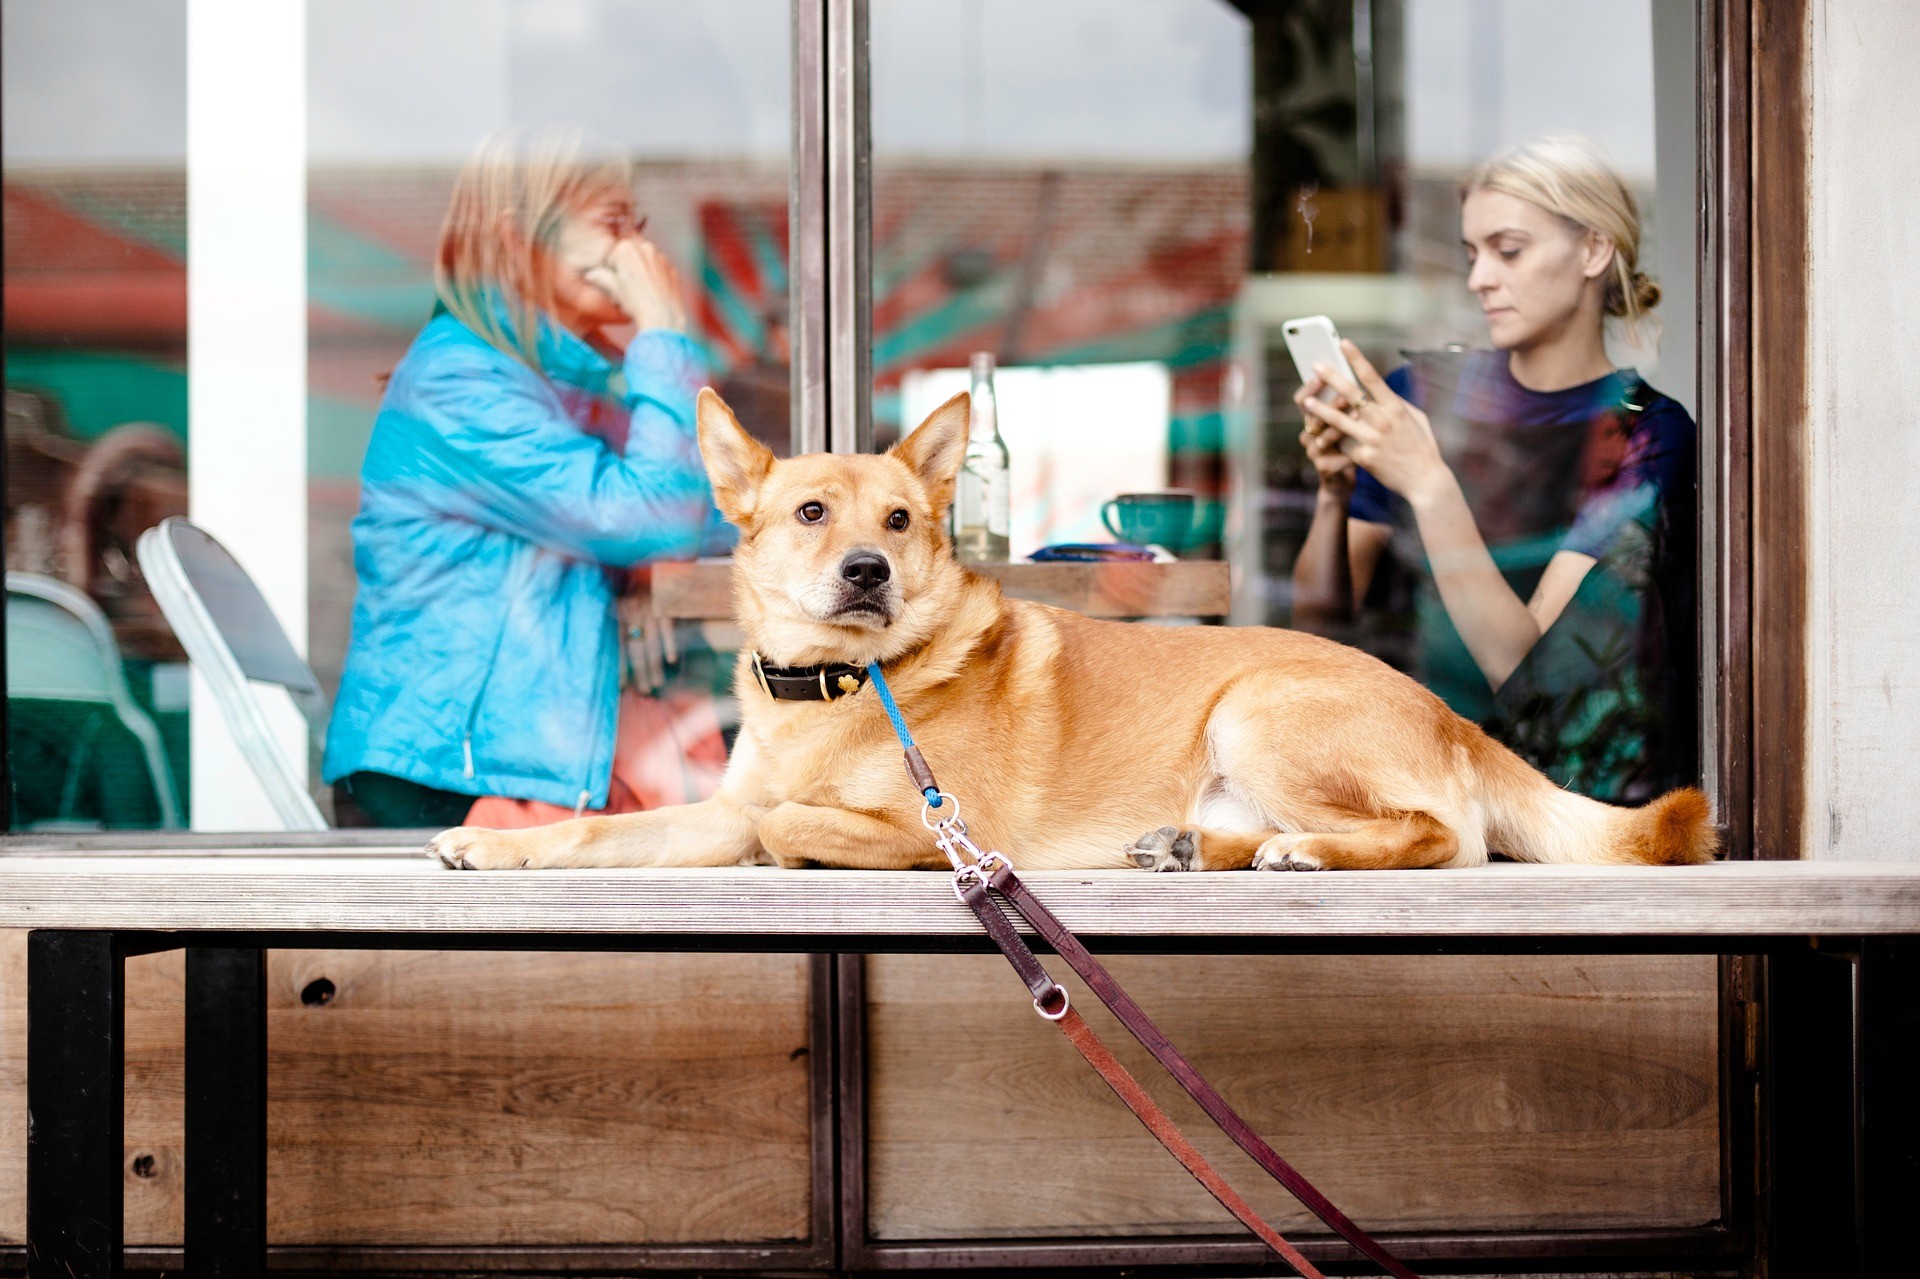 Schadet unsere Zeit am Smartphone der Beziehung zu unseren Hunden?